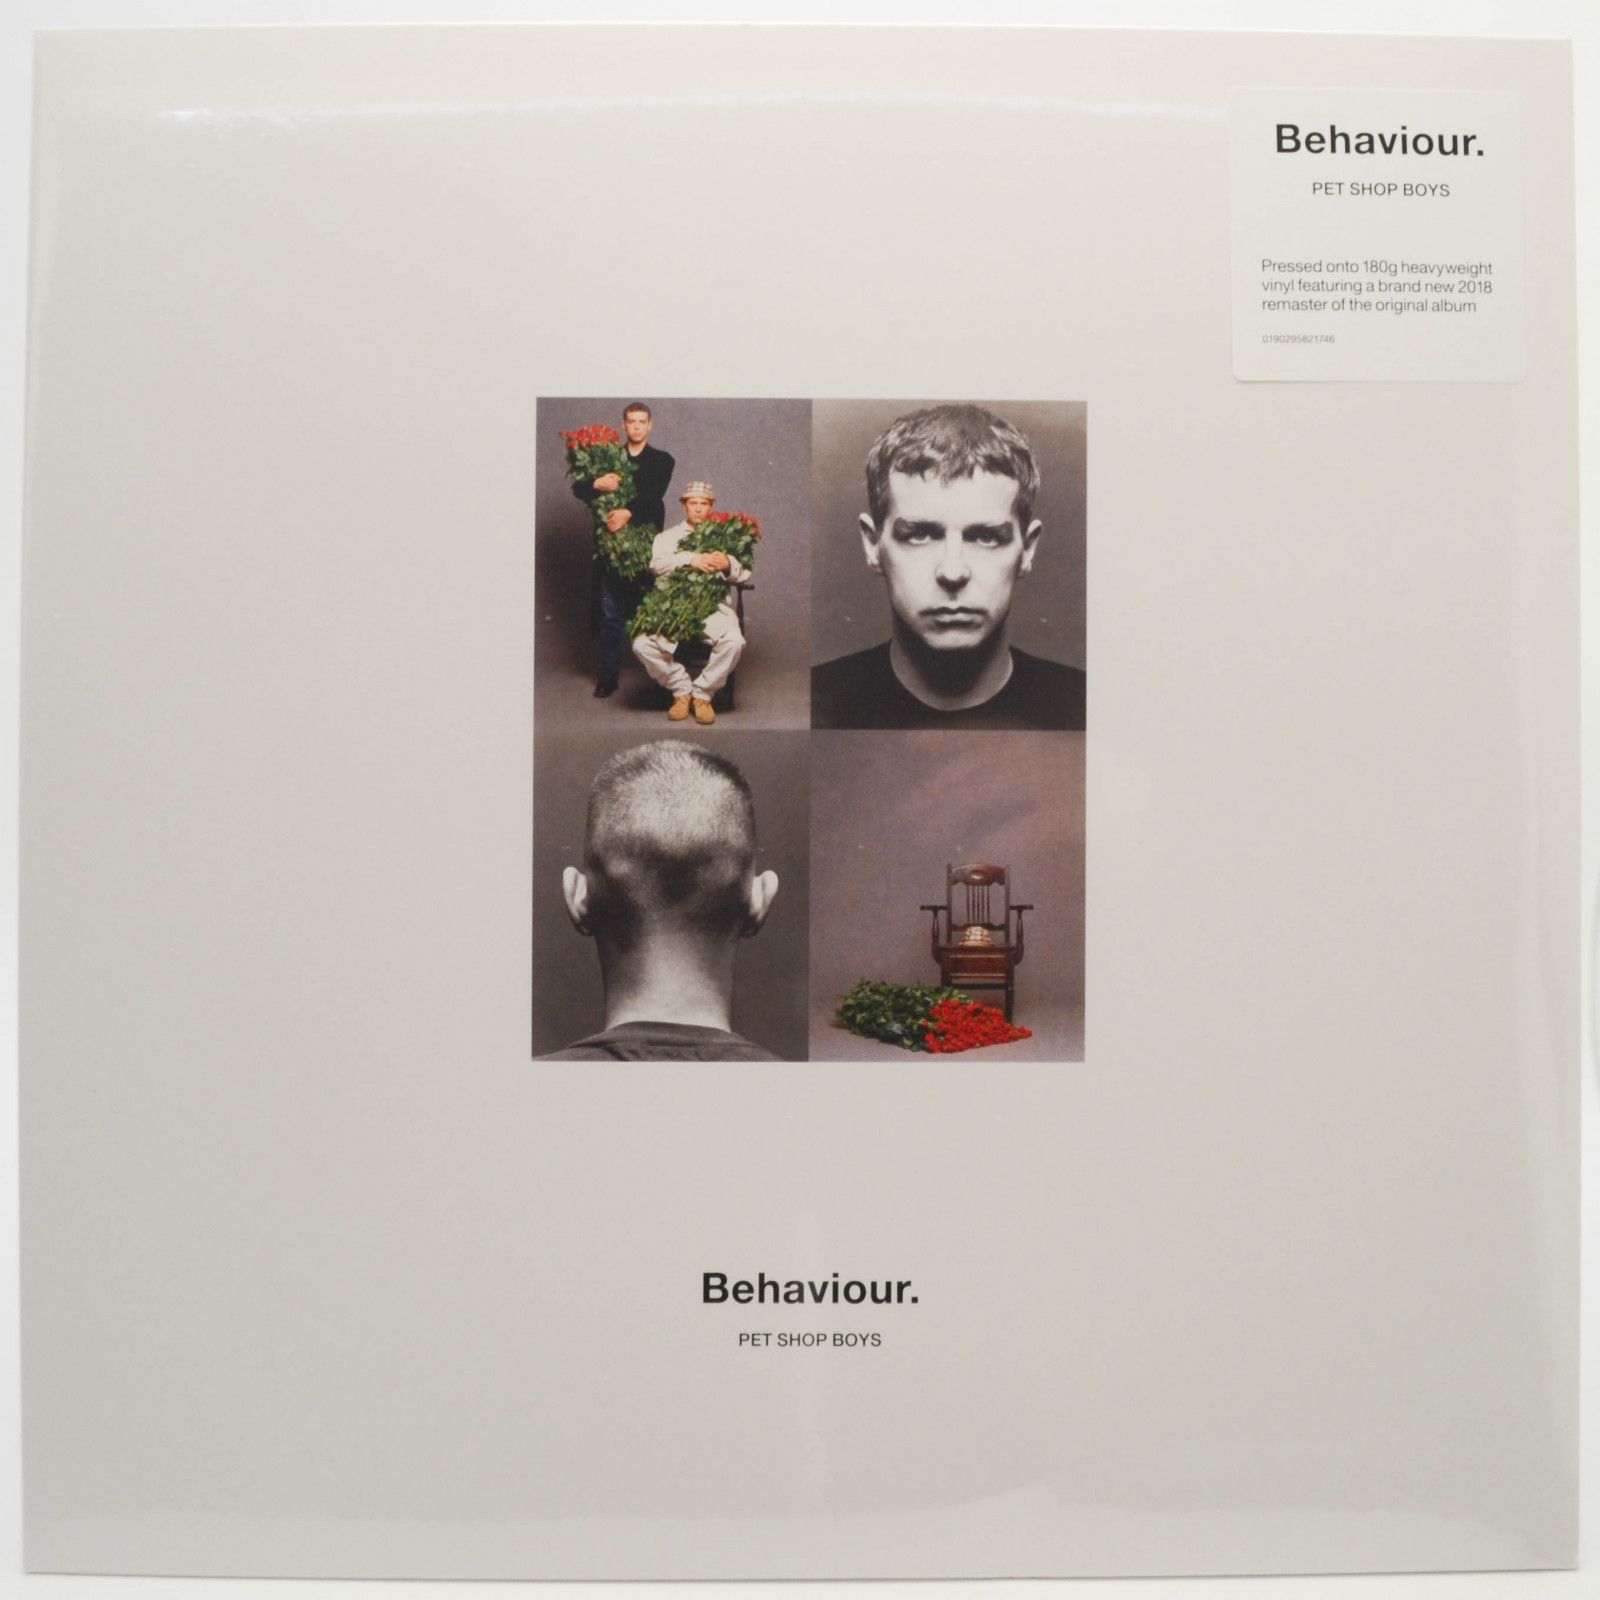 Pet Shop Boys — Behaviour., 1990